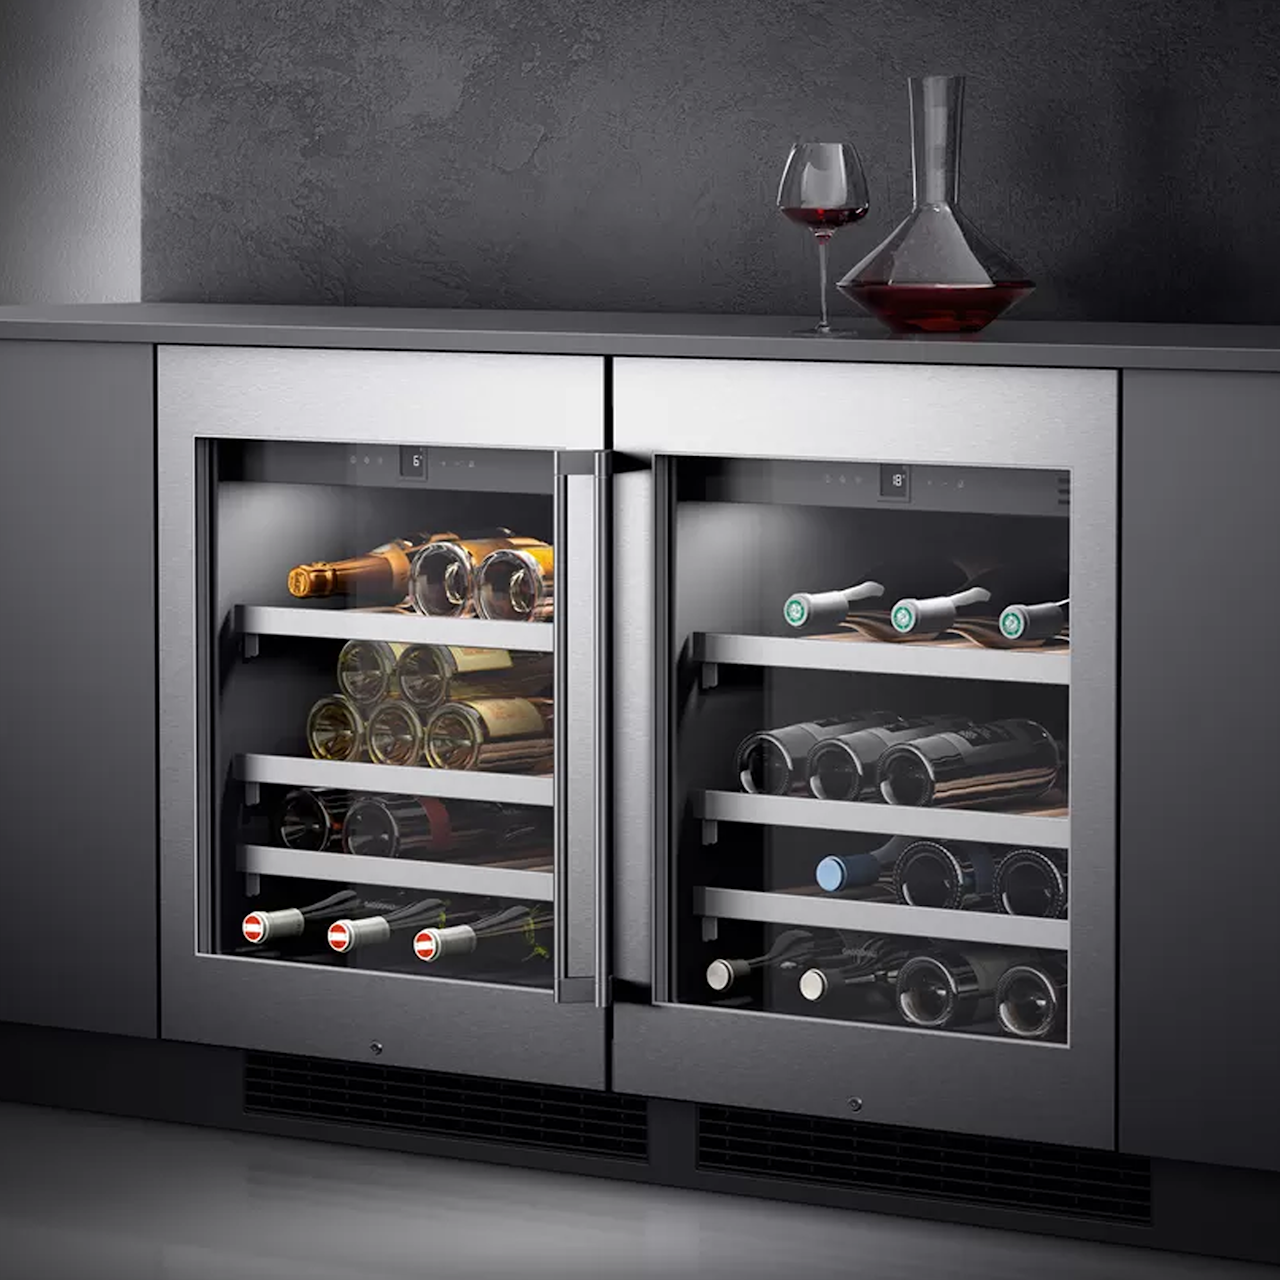 Wine fridge S200 82 x 60 cm